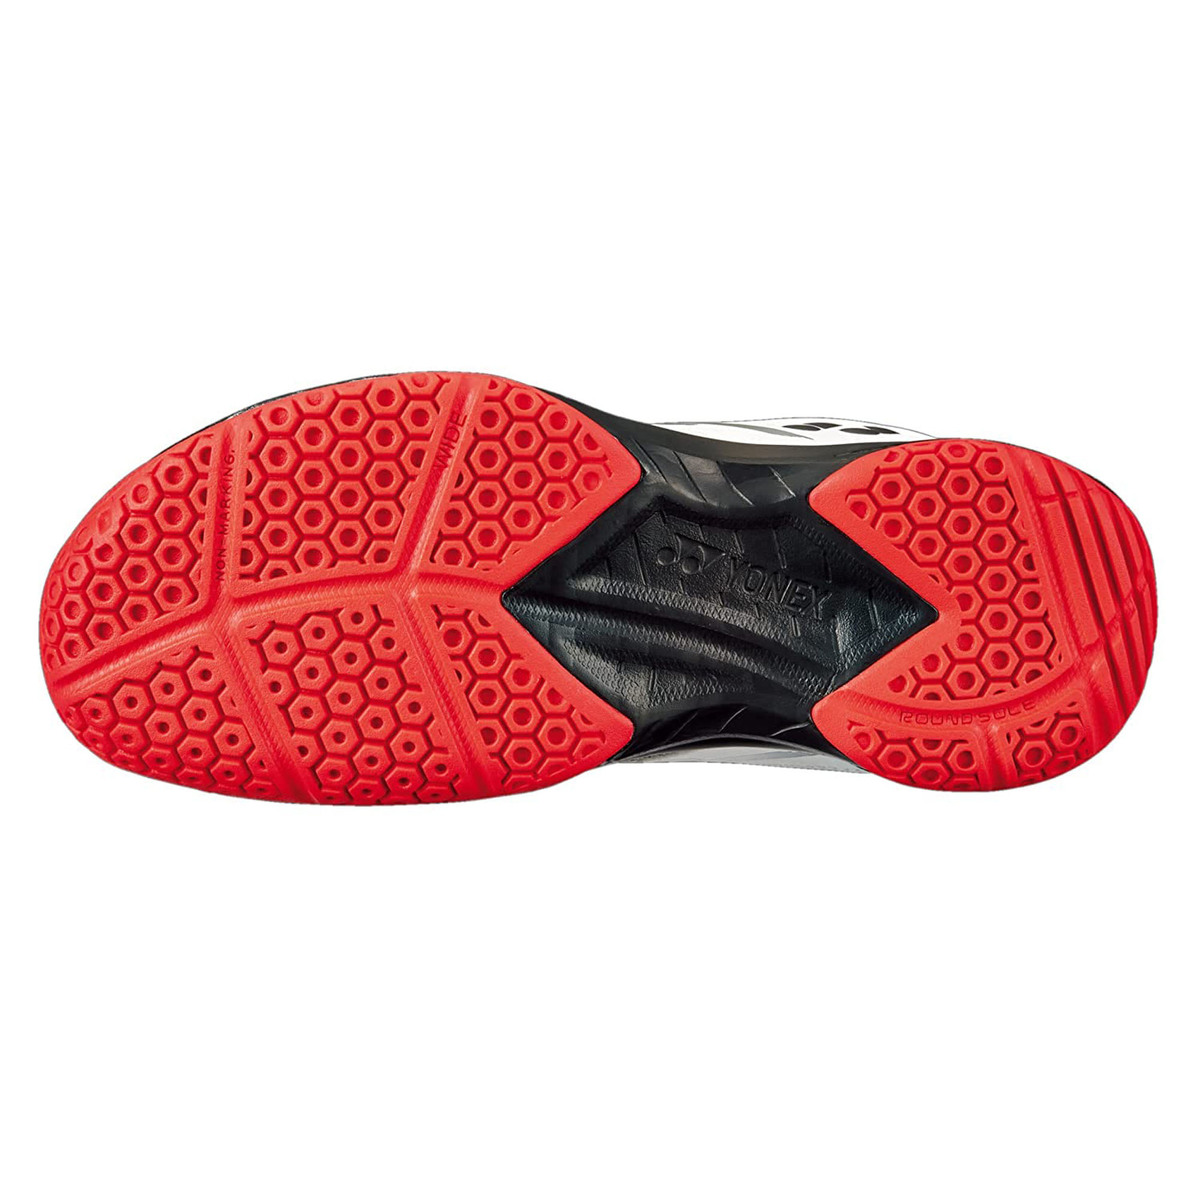 يونيكس حذاء تنس الريشة للرجال، SHB39WEX، أبيض/أحمر، 40